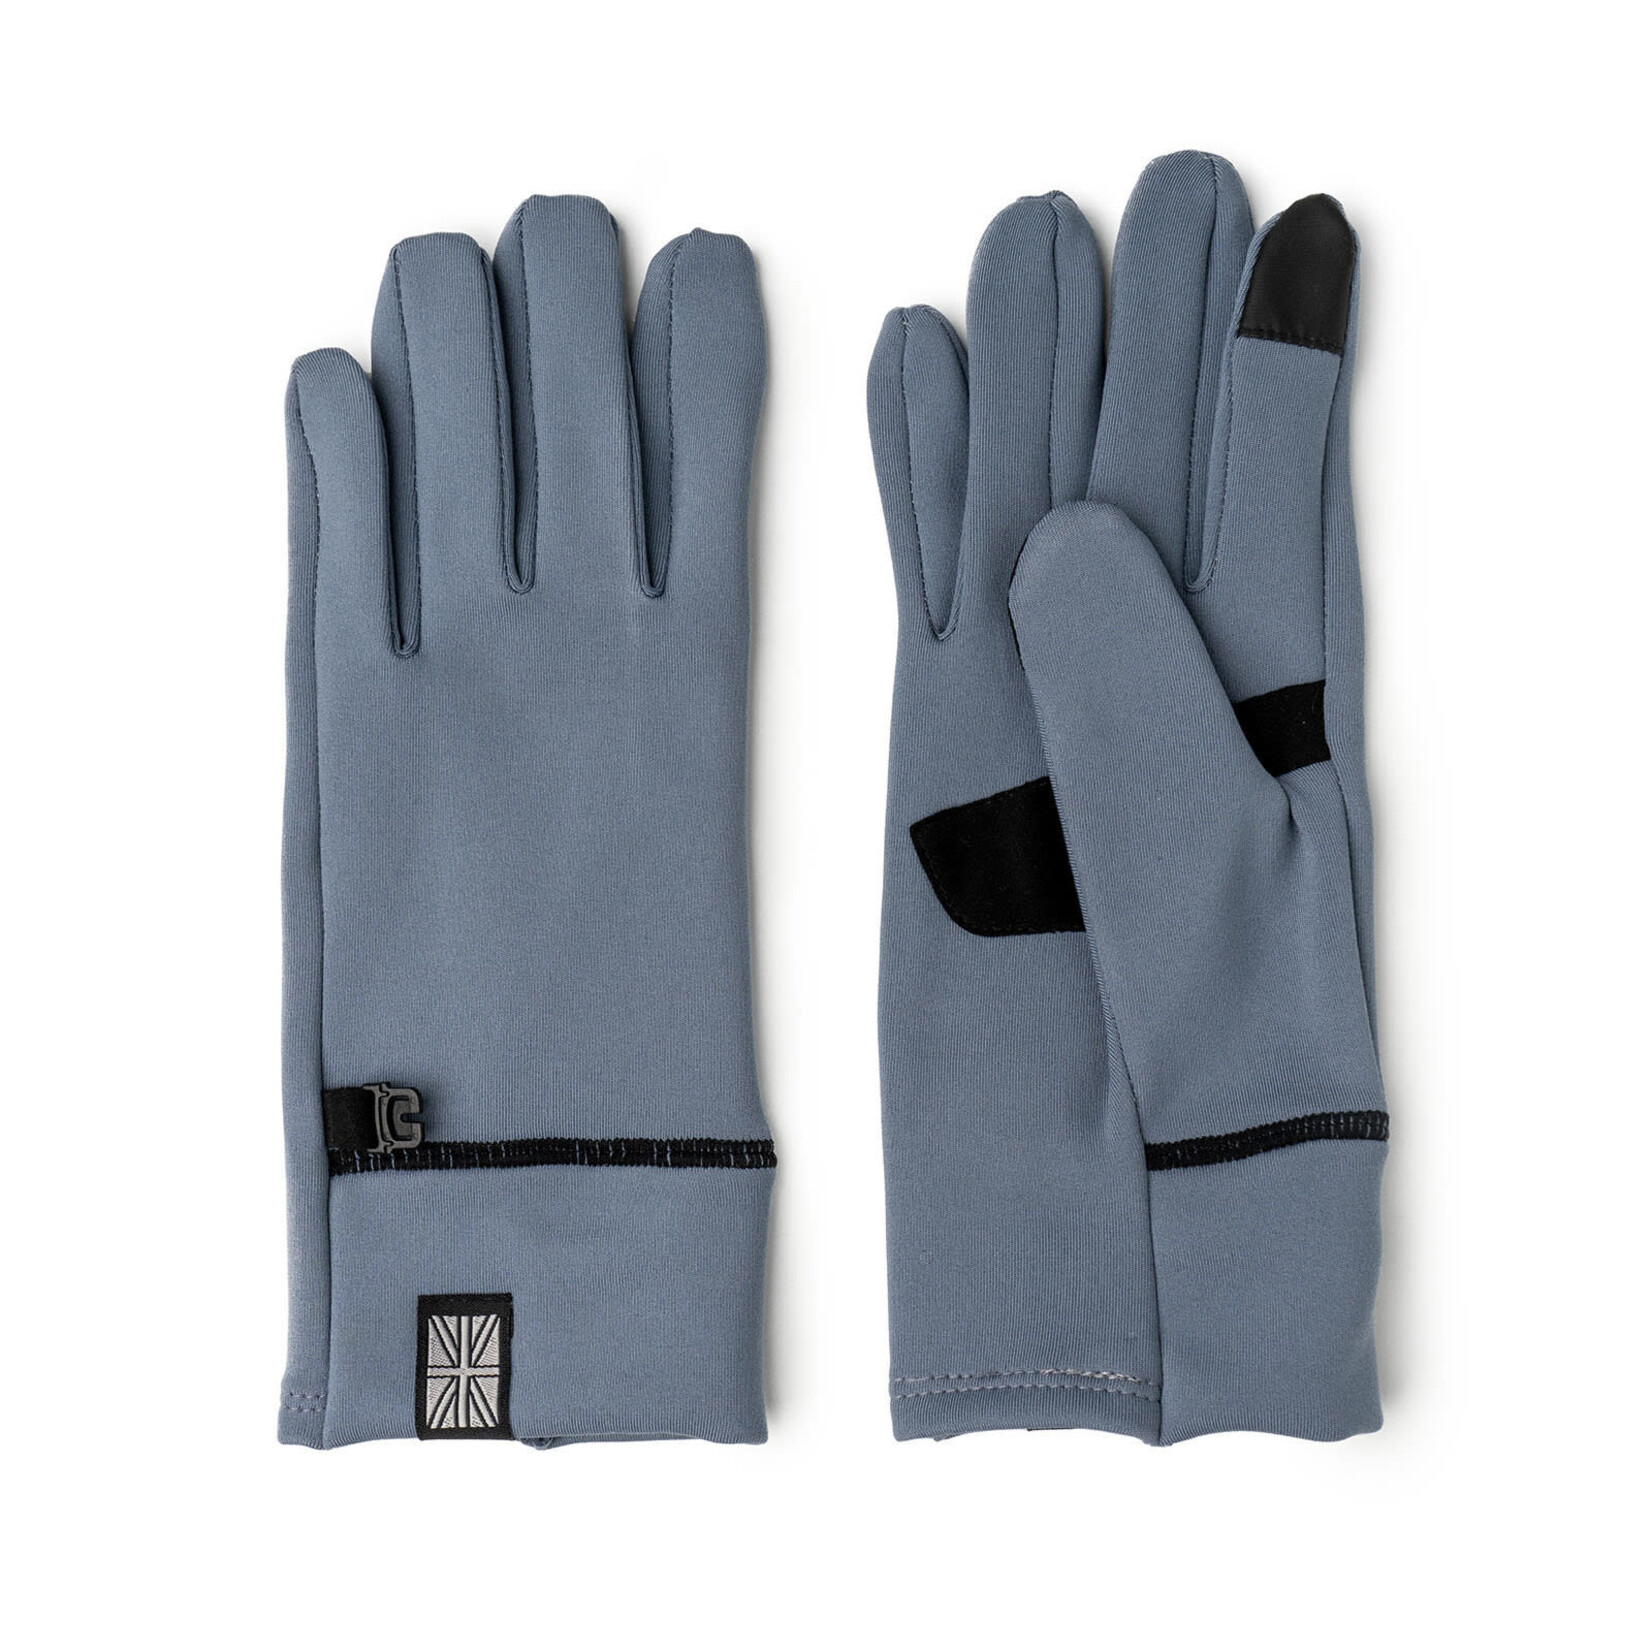 Britt's Knits Britt's Knits Thermaltech Gloves Blue L/XL